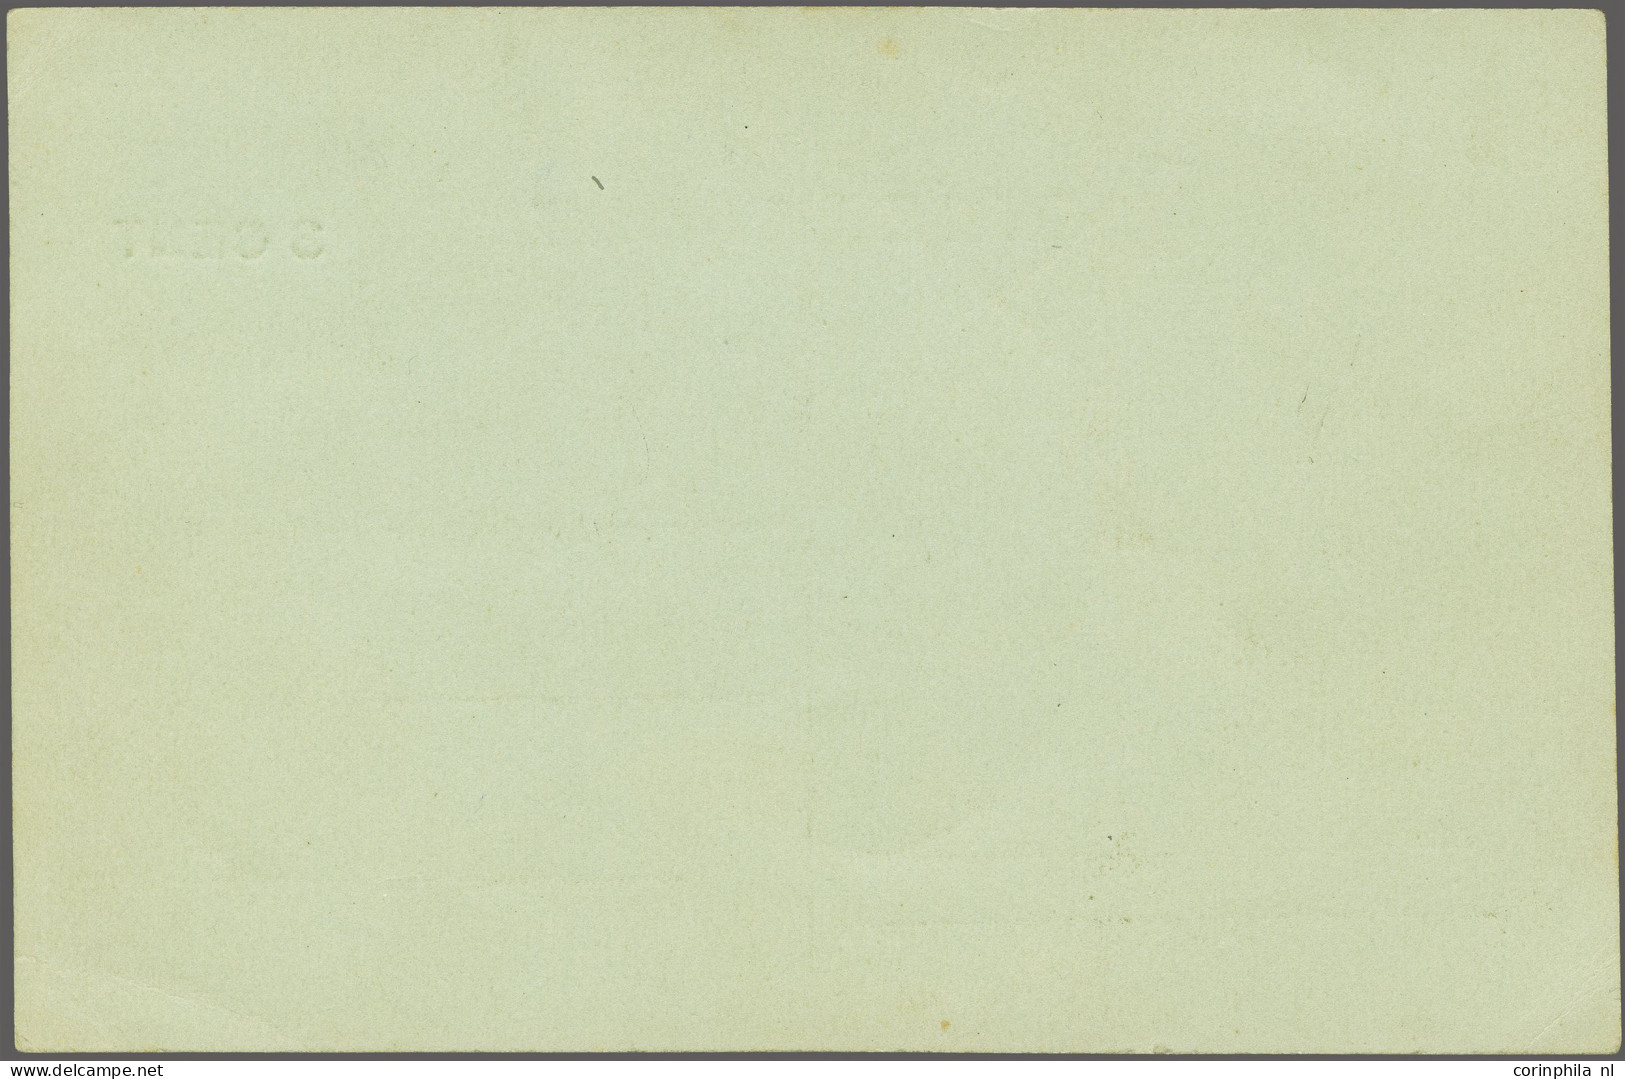 Cover 3 Cent Opdruk Op 2½ Cent Groen Op Ongebruikte Briefkaart. In 1916 Werd Het Briefkaart Tarief Verhoogd Van 2½ Cent  - Unclassified